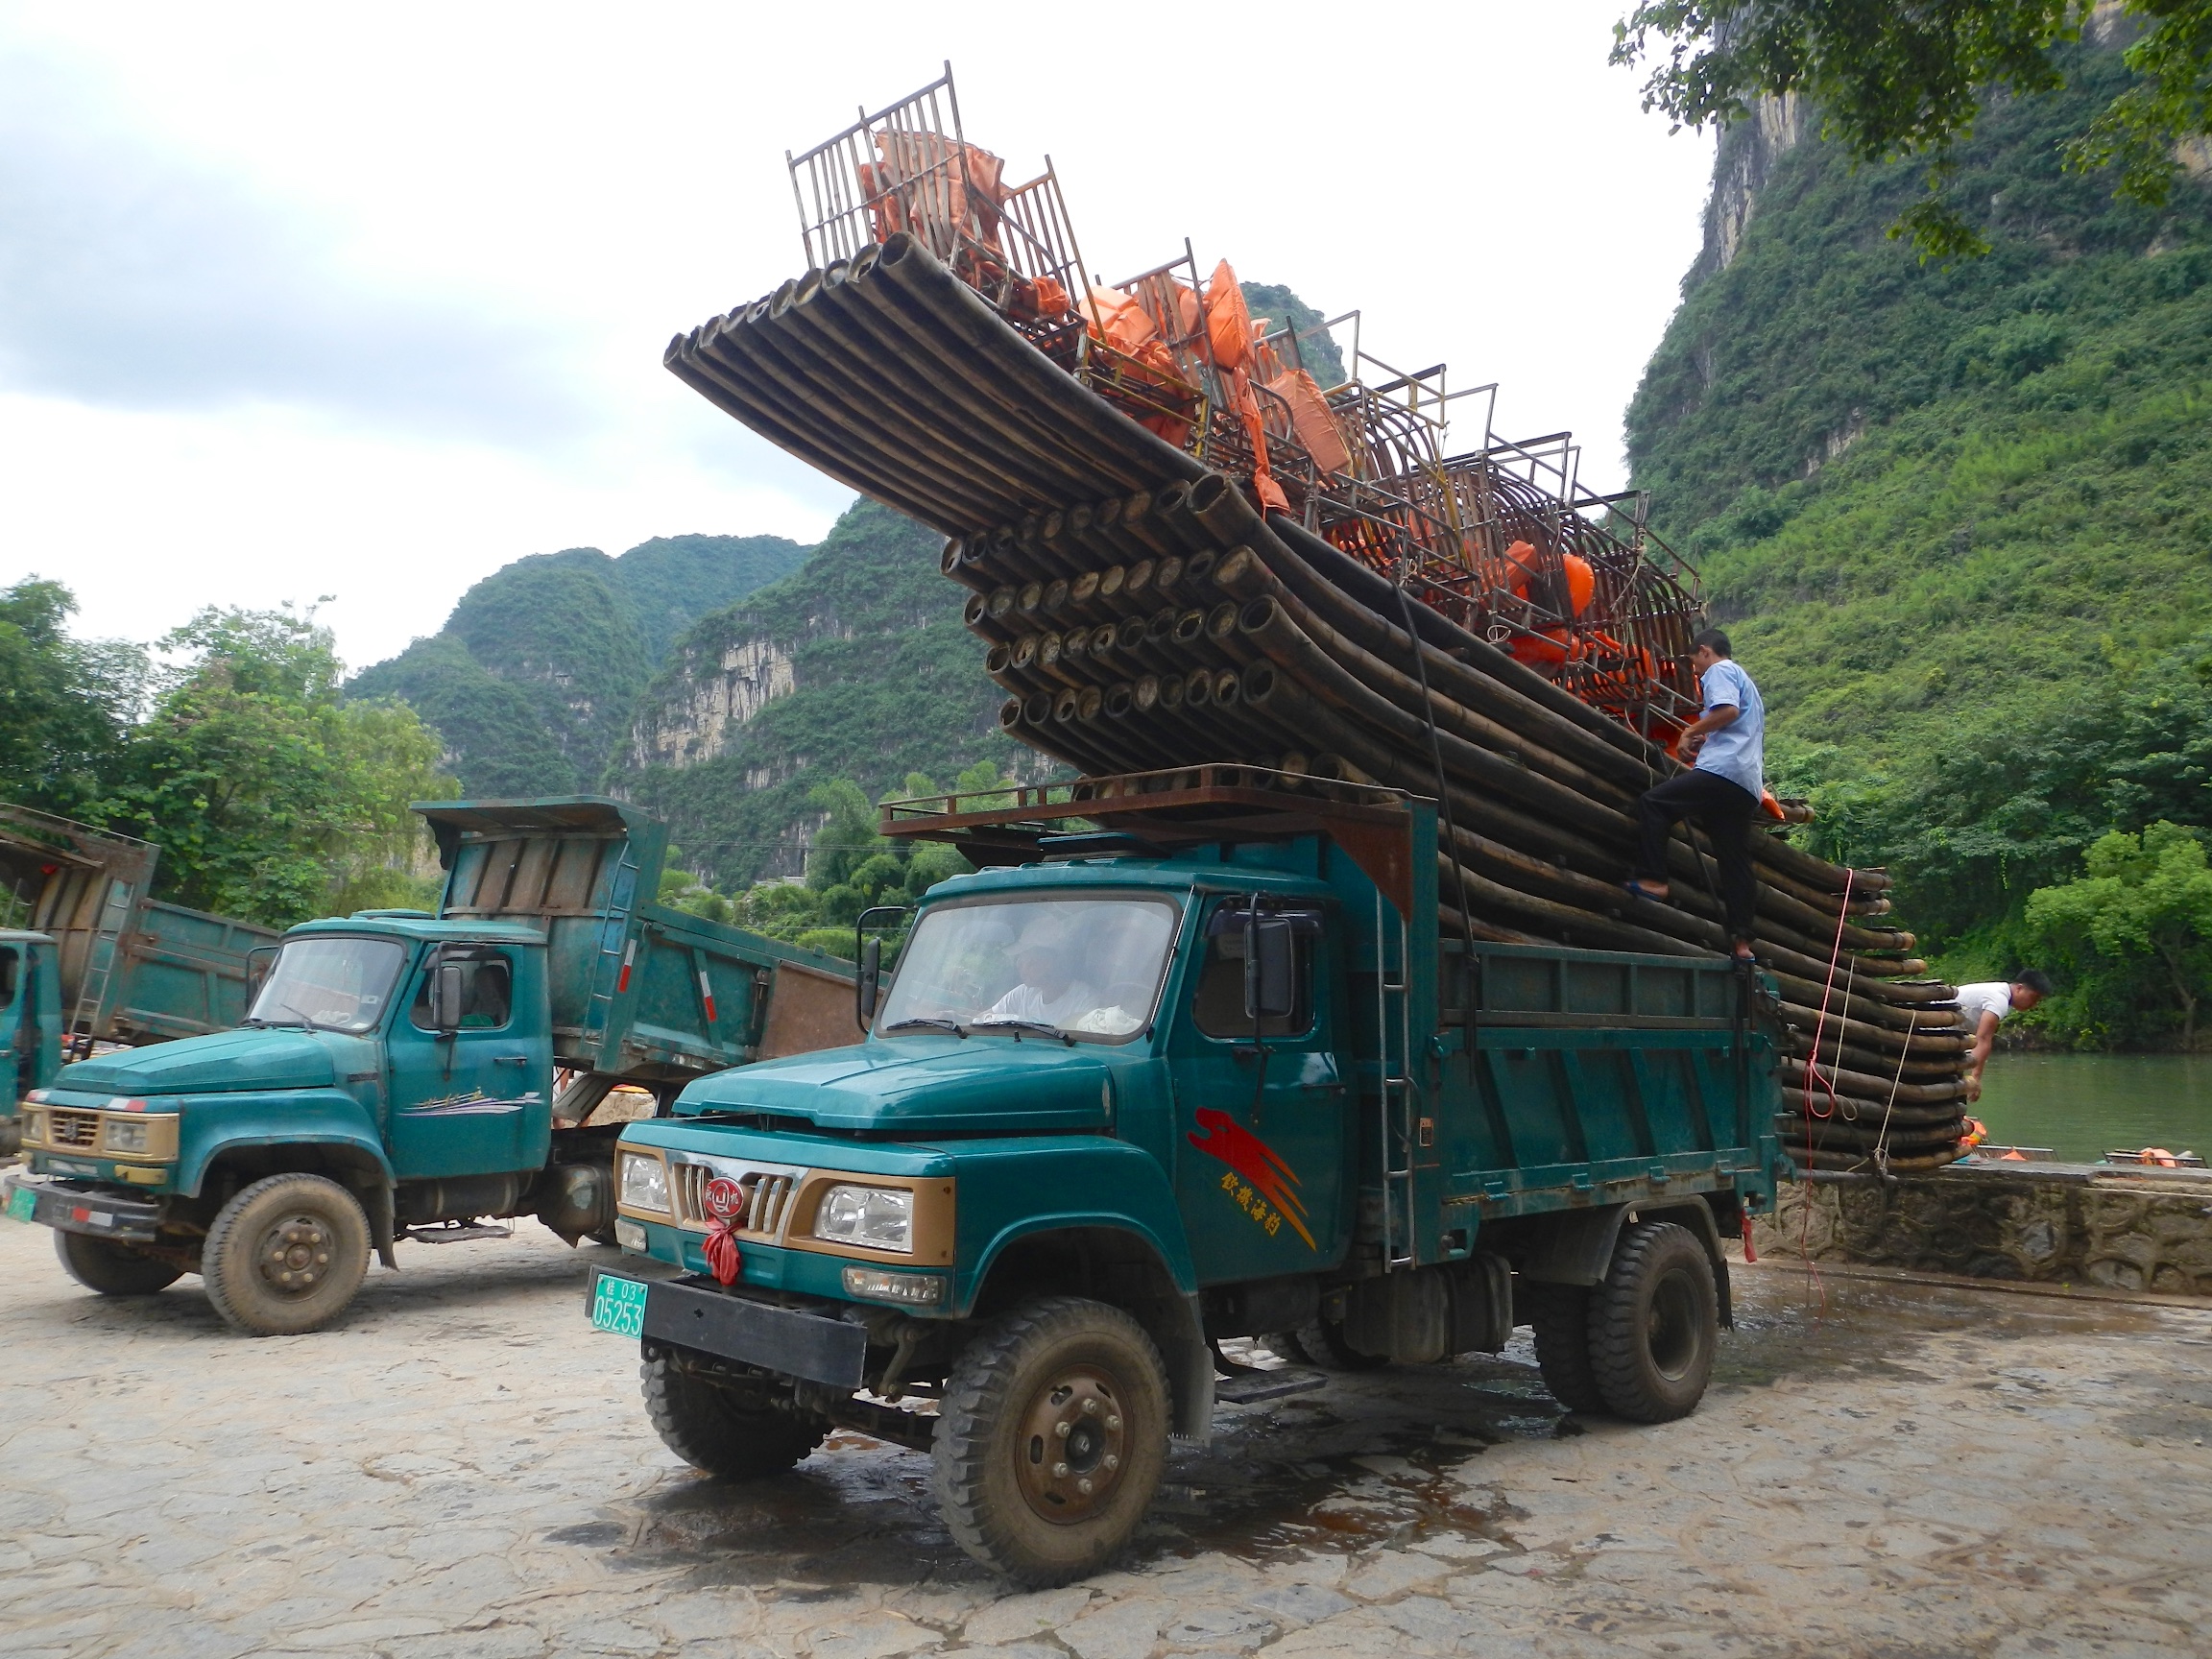  Loading rafts onto truck, Yulong River, Yangshuo 